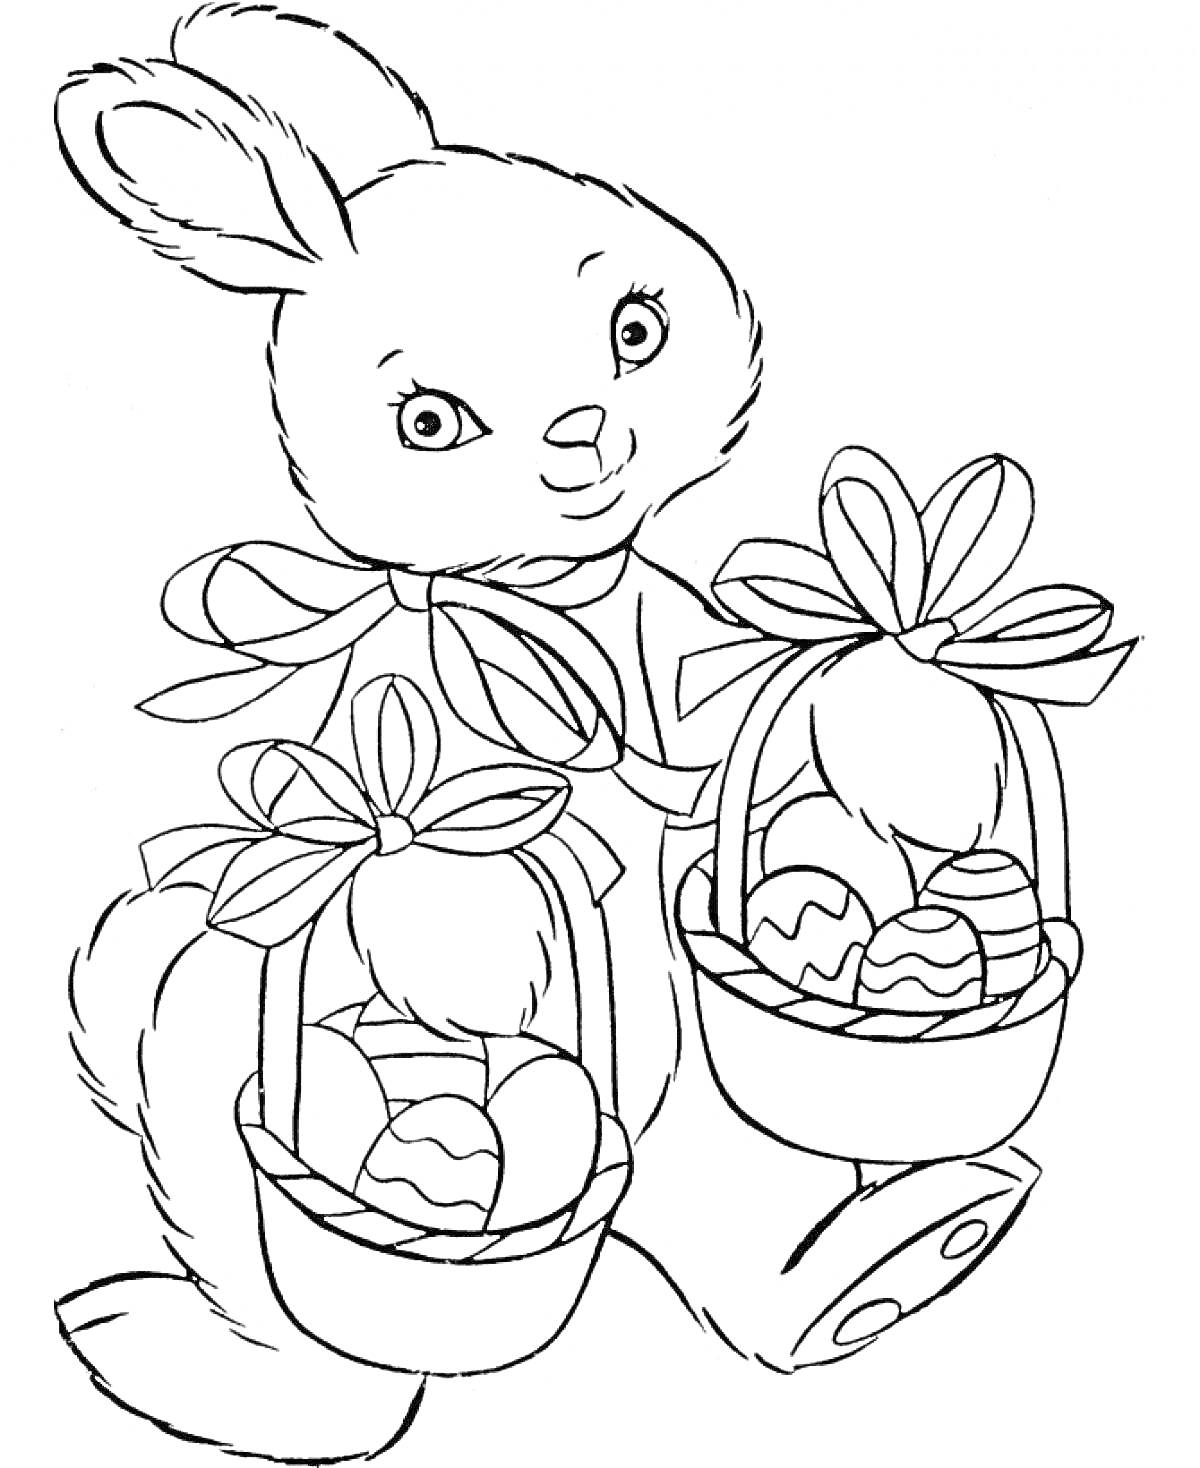 Раскраска Пасхальный кролик с корзинками пасхальных яиц